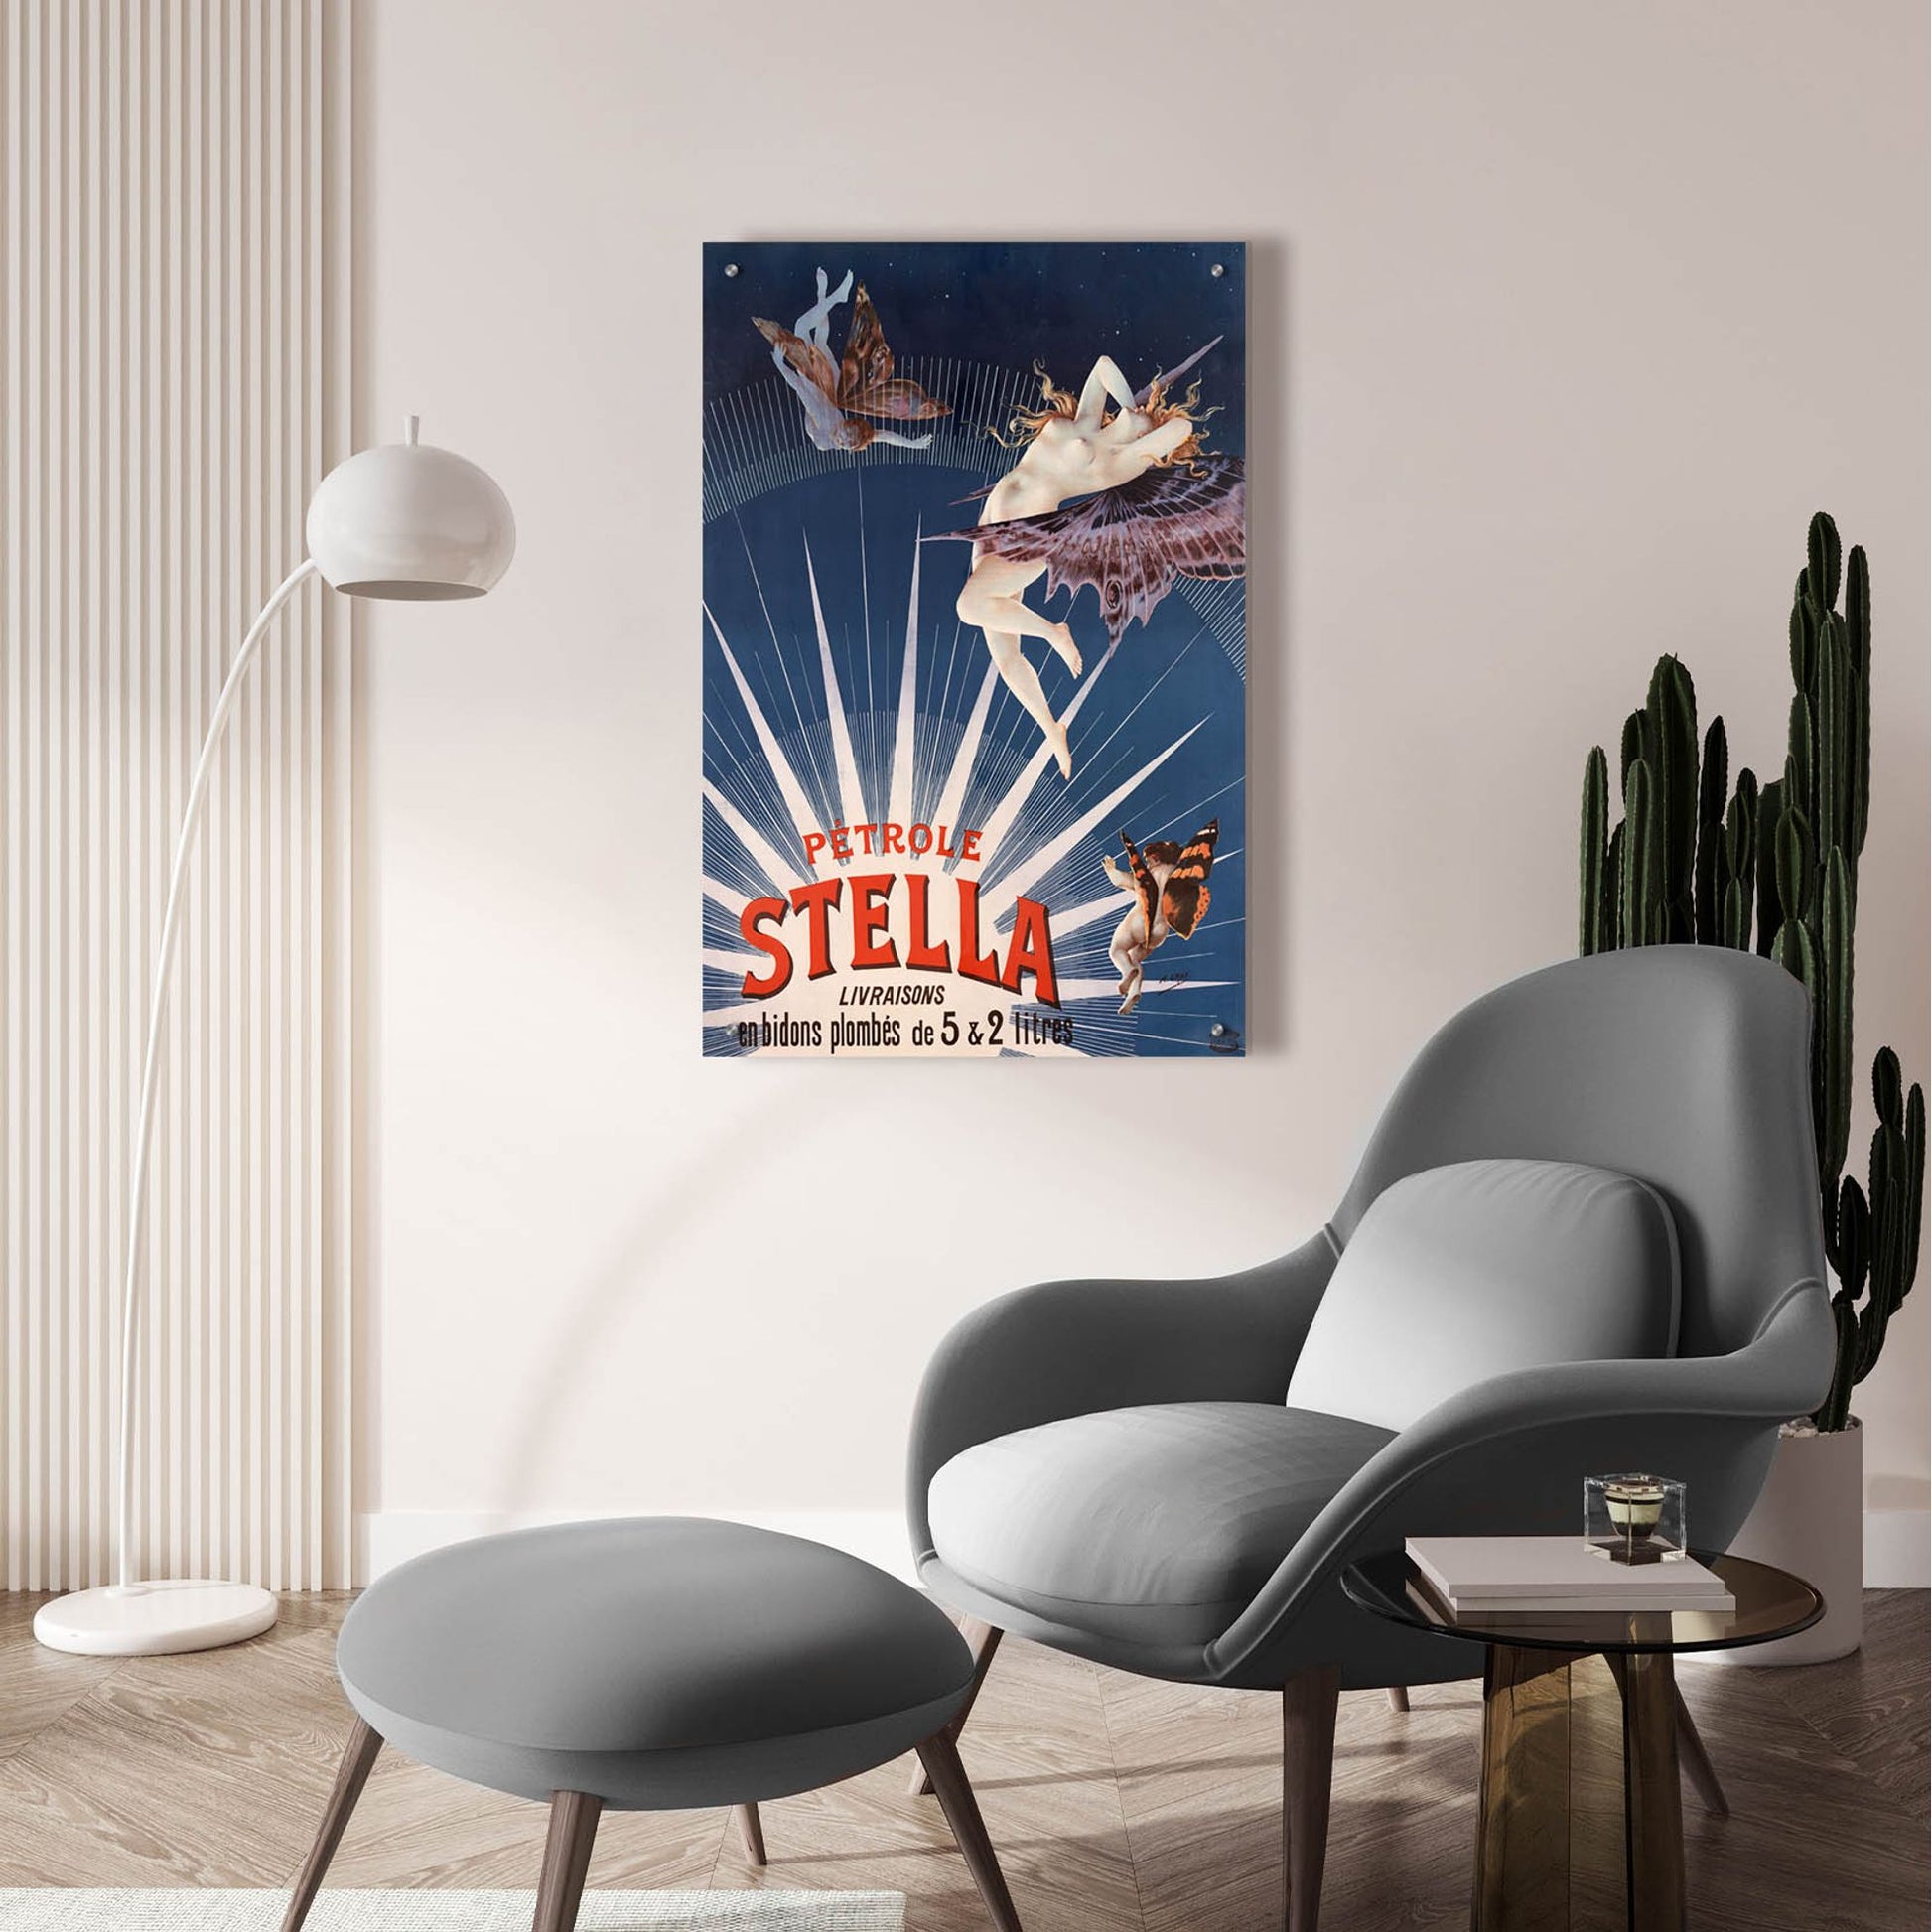 Epic Art 'Petrole Stella' by Gray, Acrylic Glass Wall Art,24x36